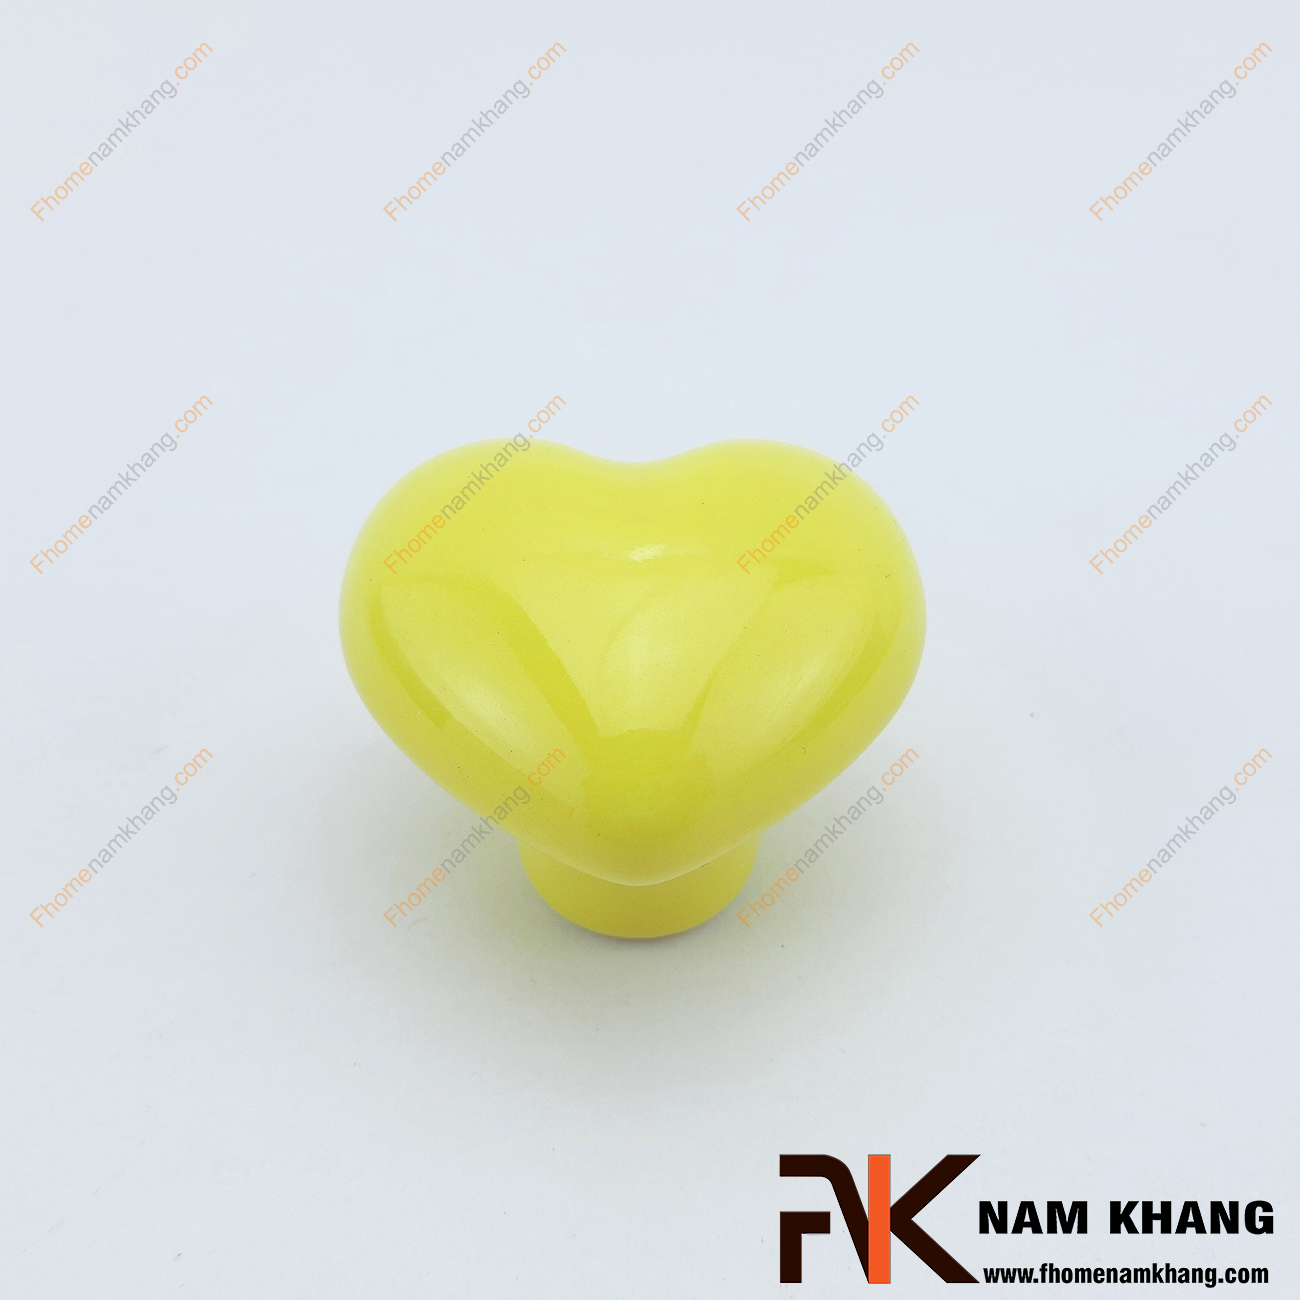 Núm cửa tủ bằng sứ hình trái tim NK394 là một dạng núm cửa tủ thuần sứ được sản xuất từ chất liệu sứ cao cấp có độ bền cao